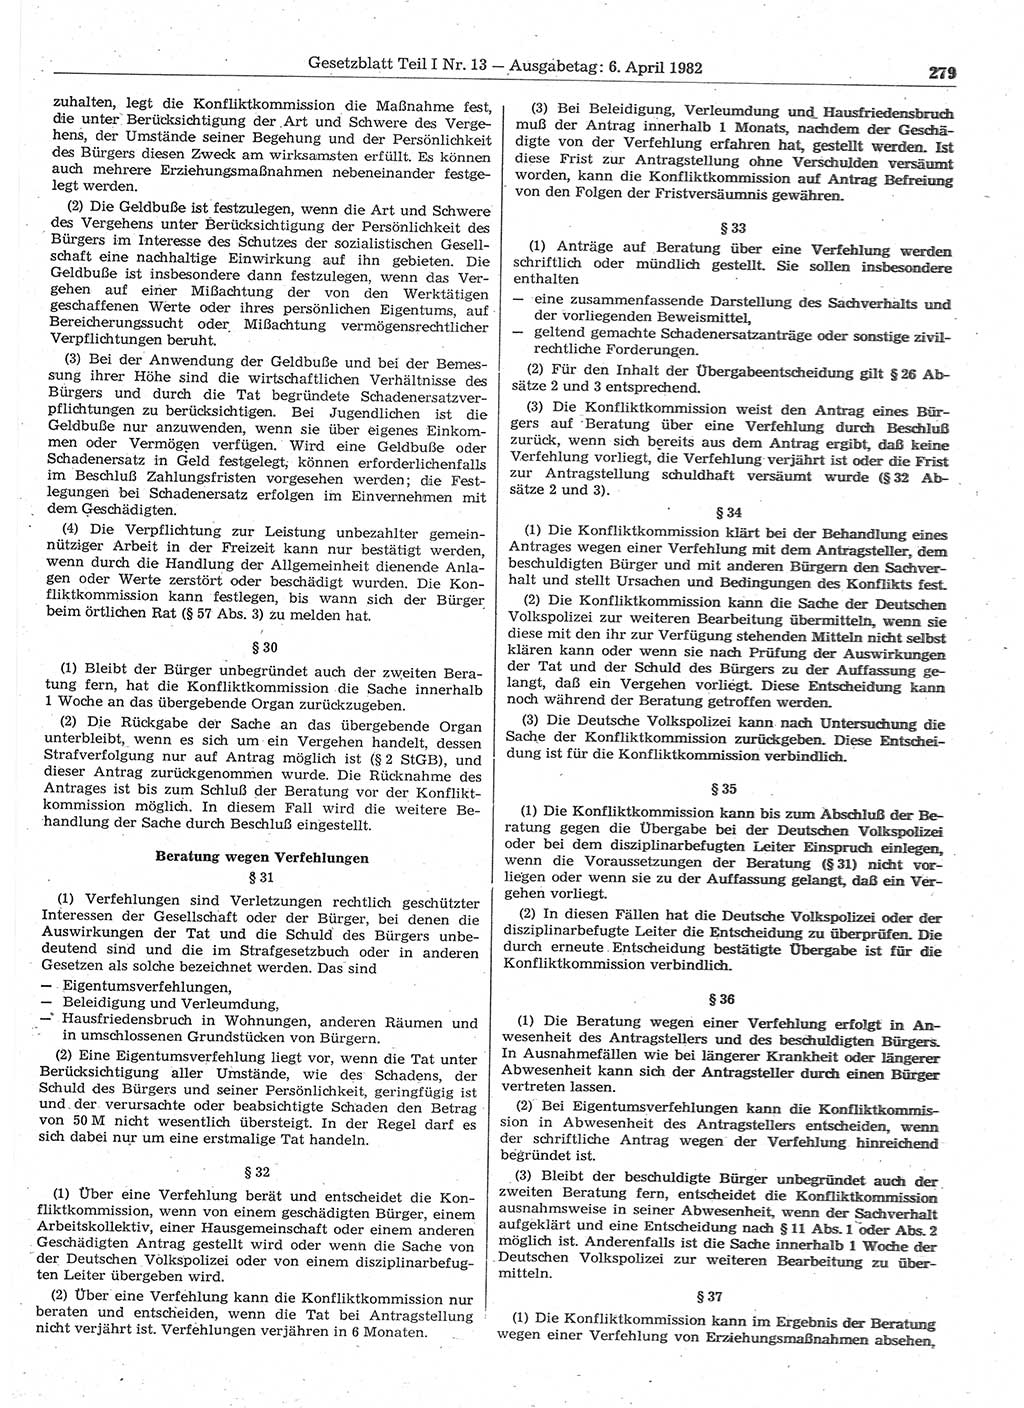 Gesetzblatt (GBl.) der Deutschen Demokratischen Republik (DDR) Teil Ⅰ 1982, Seite 279 (GBl. DDR Ⅰ 1982, S. 279)